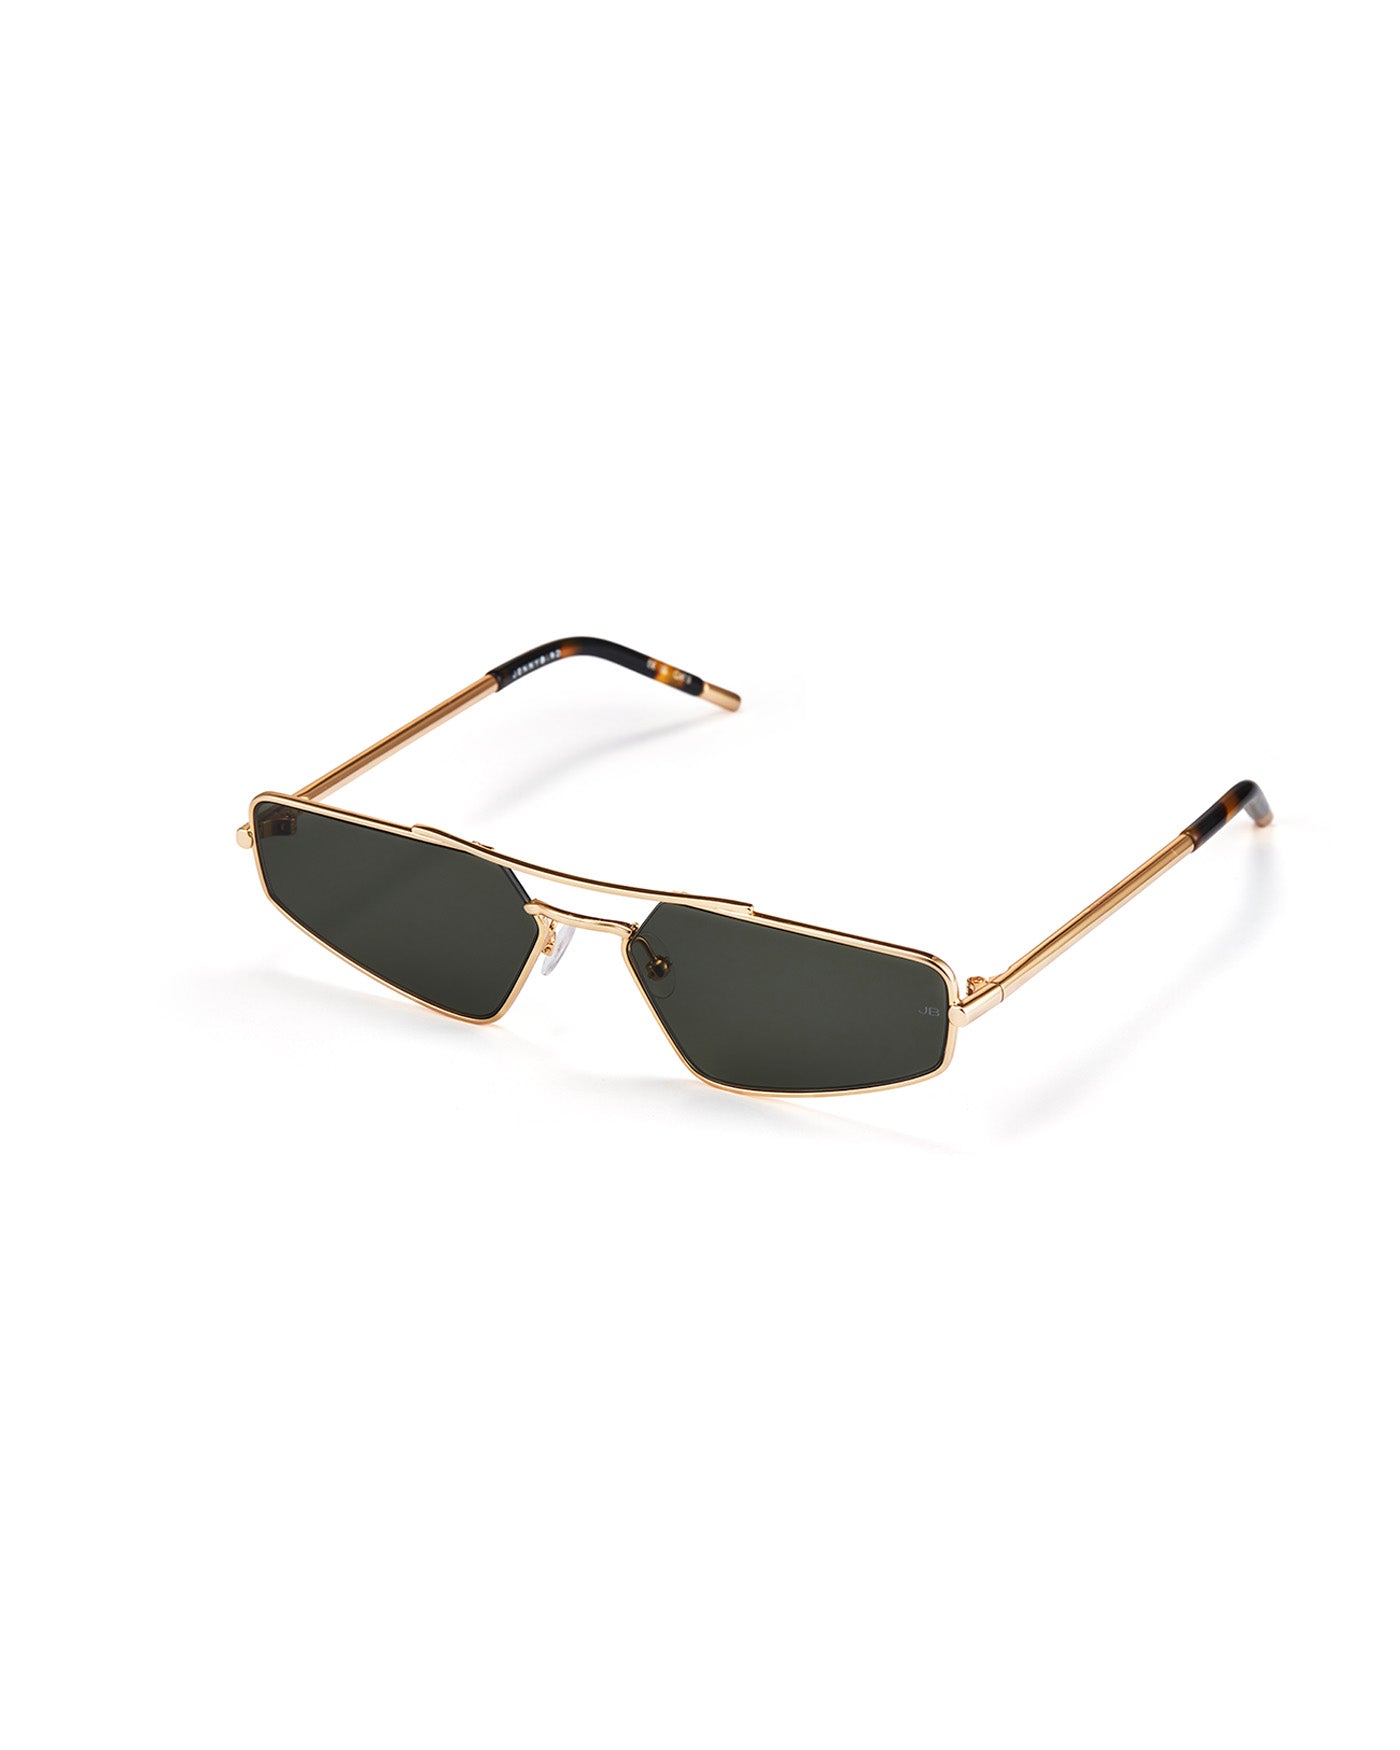 1 Pilot Polarized Sunglasses Fashion Yellow Lens Night Driving Glasses Men  Women 